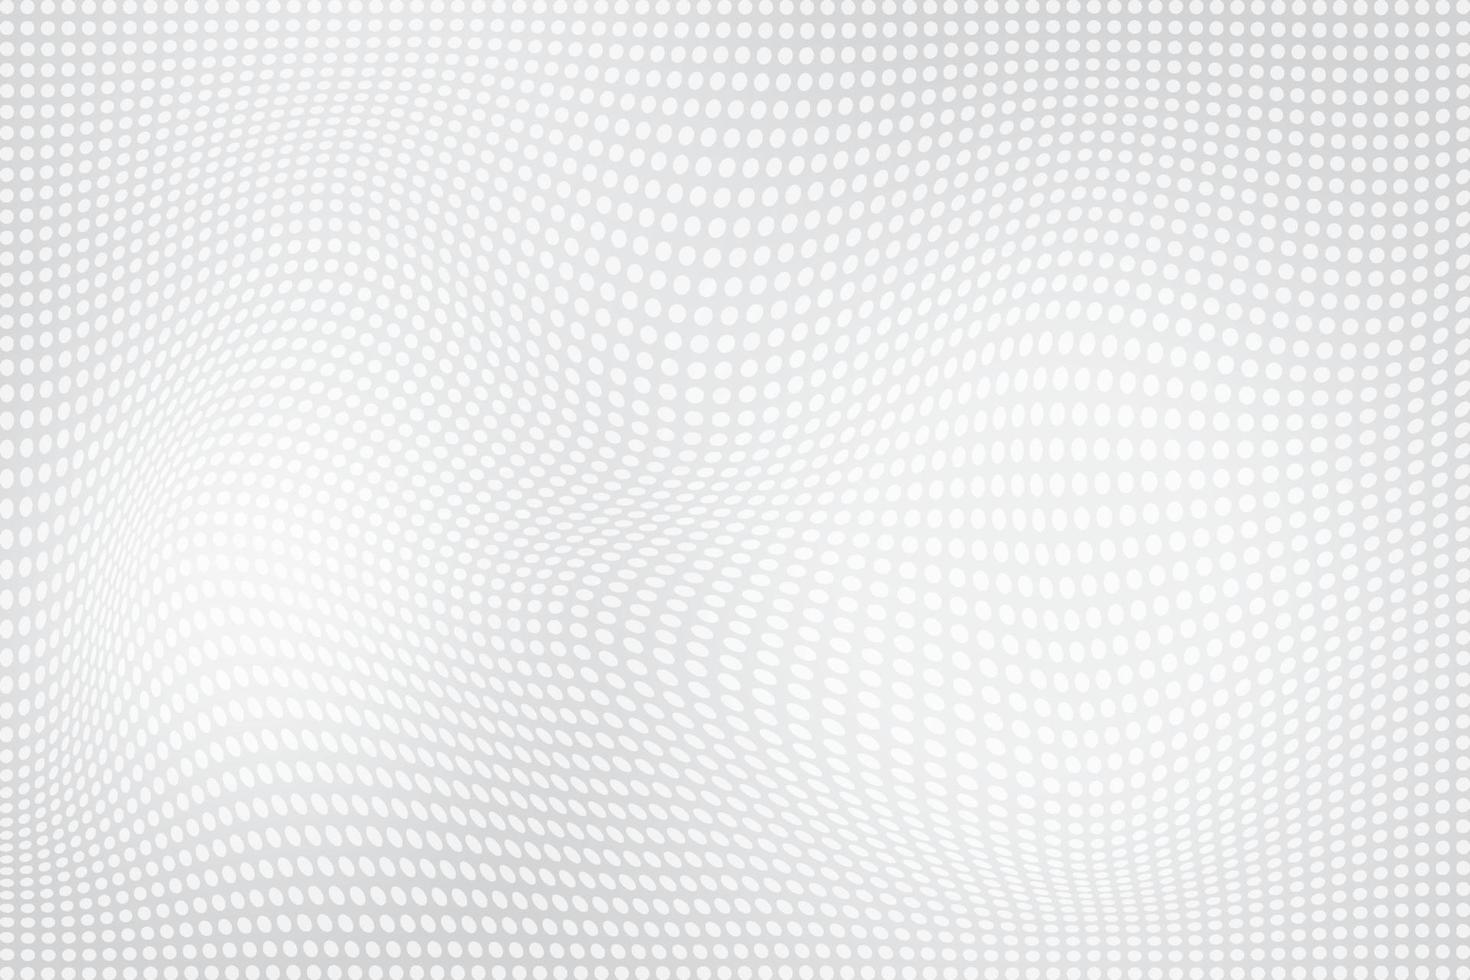 abstrakt Weiß und grau Farbe, modern Design Hintergrund mit geometrisch runden Form, Punkt Muster. Vektor Illustration.